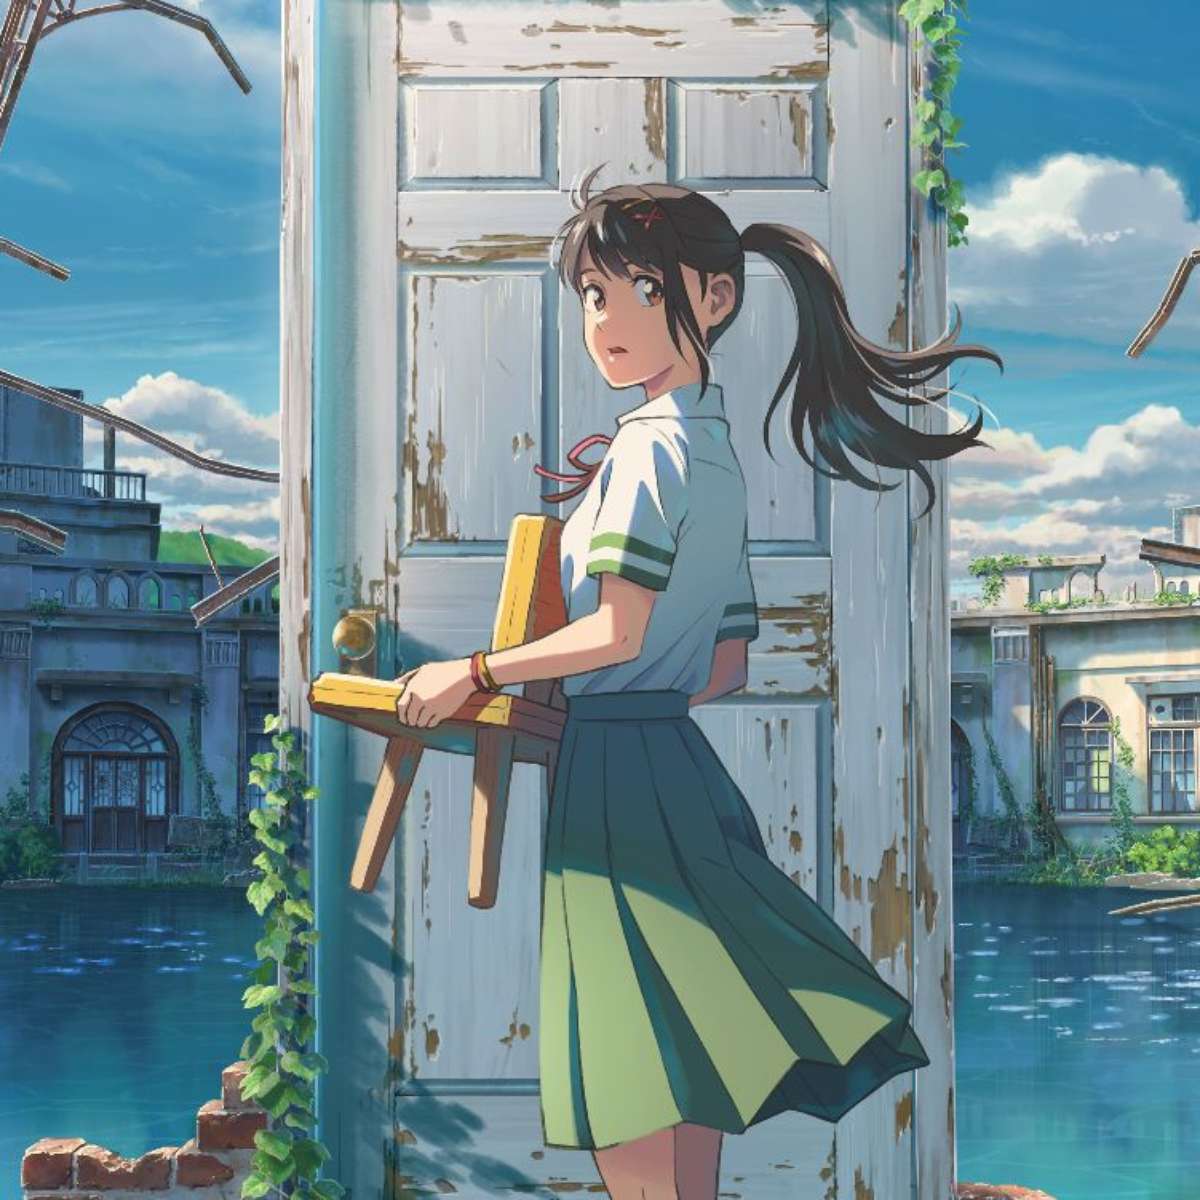 Crunchyroll: Suzume, animação de Makoto Shinkai, estreia com